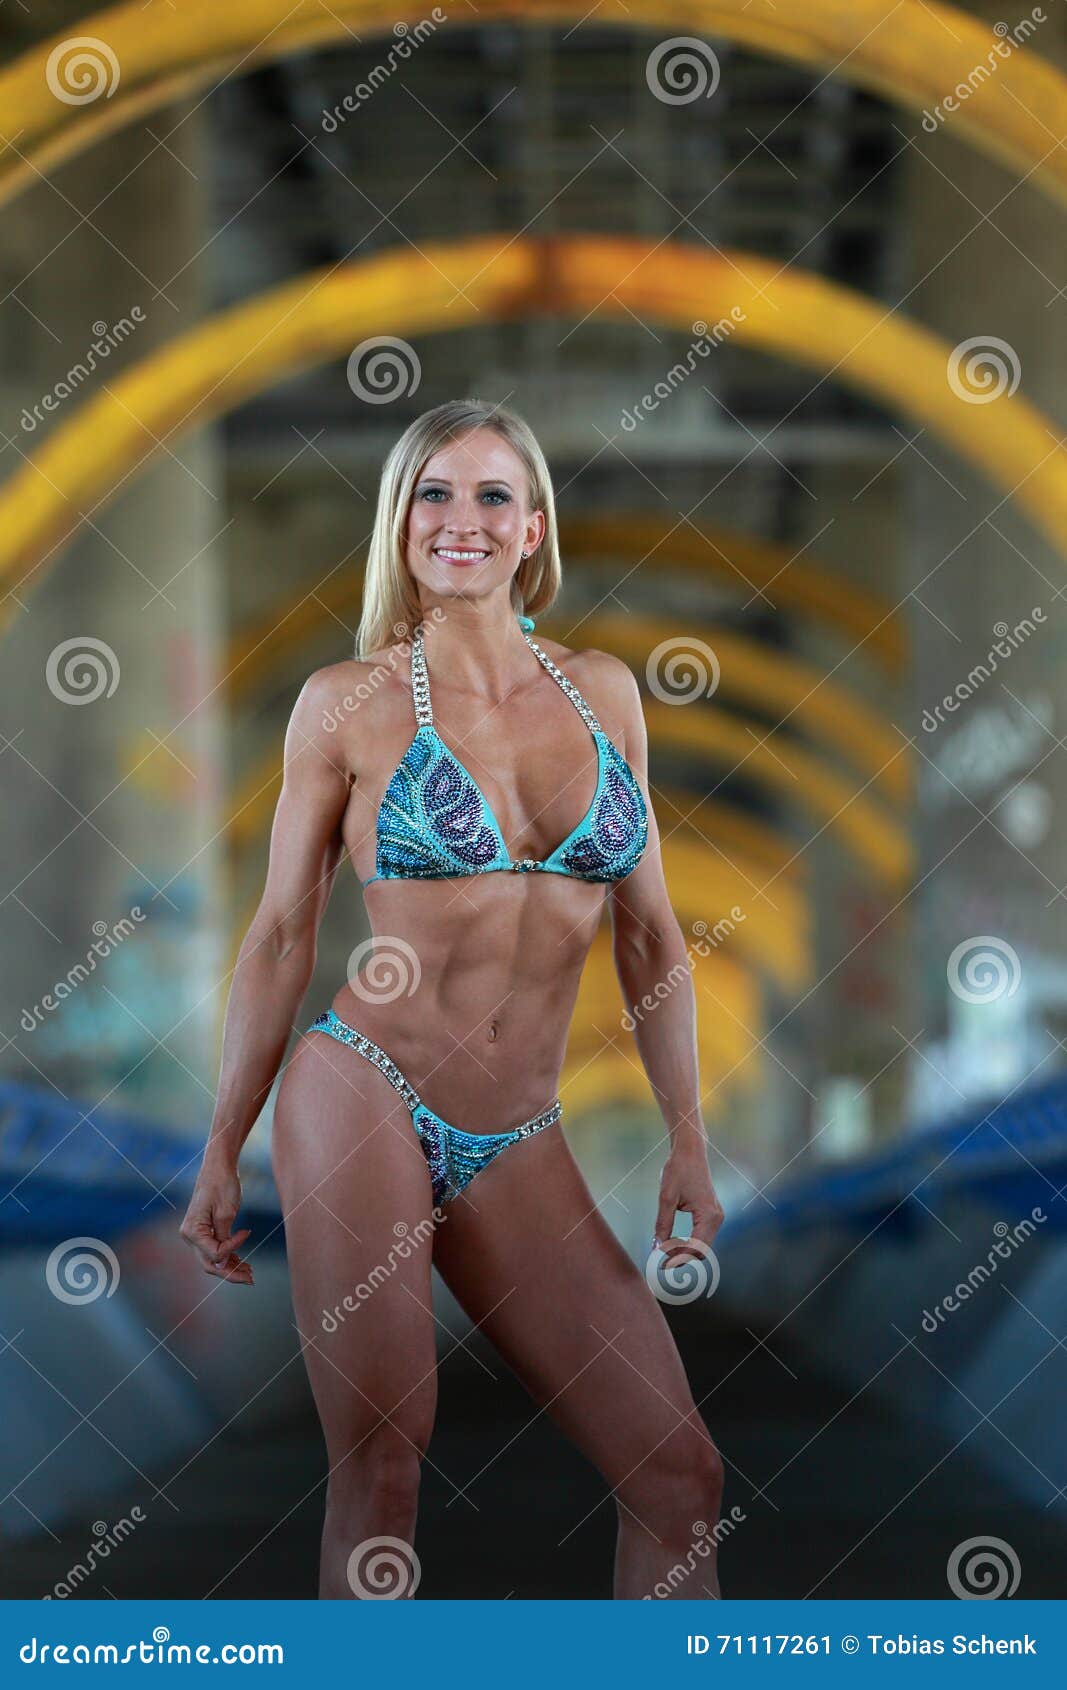 Blonde bodybuilder in bikini